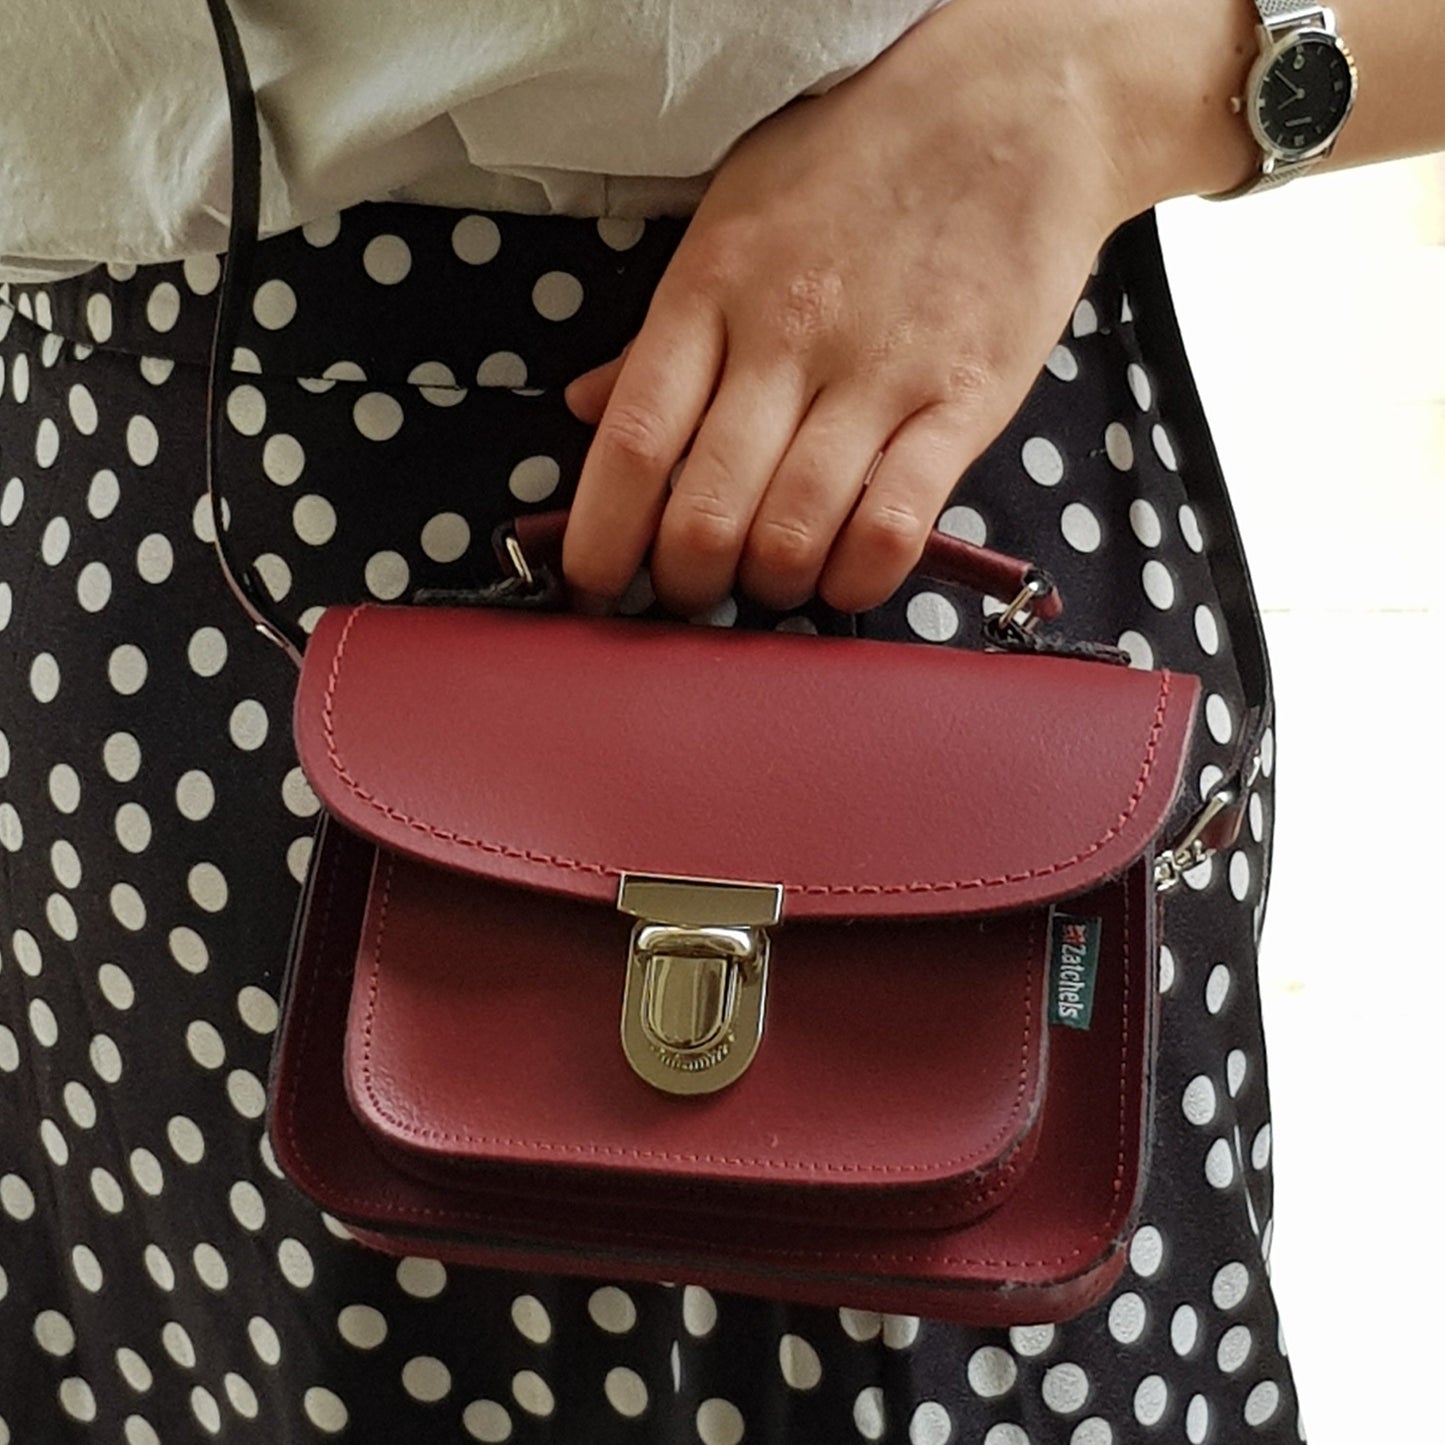 Luna Handmade Leather Bag - Oxblood Red-3